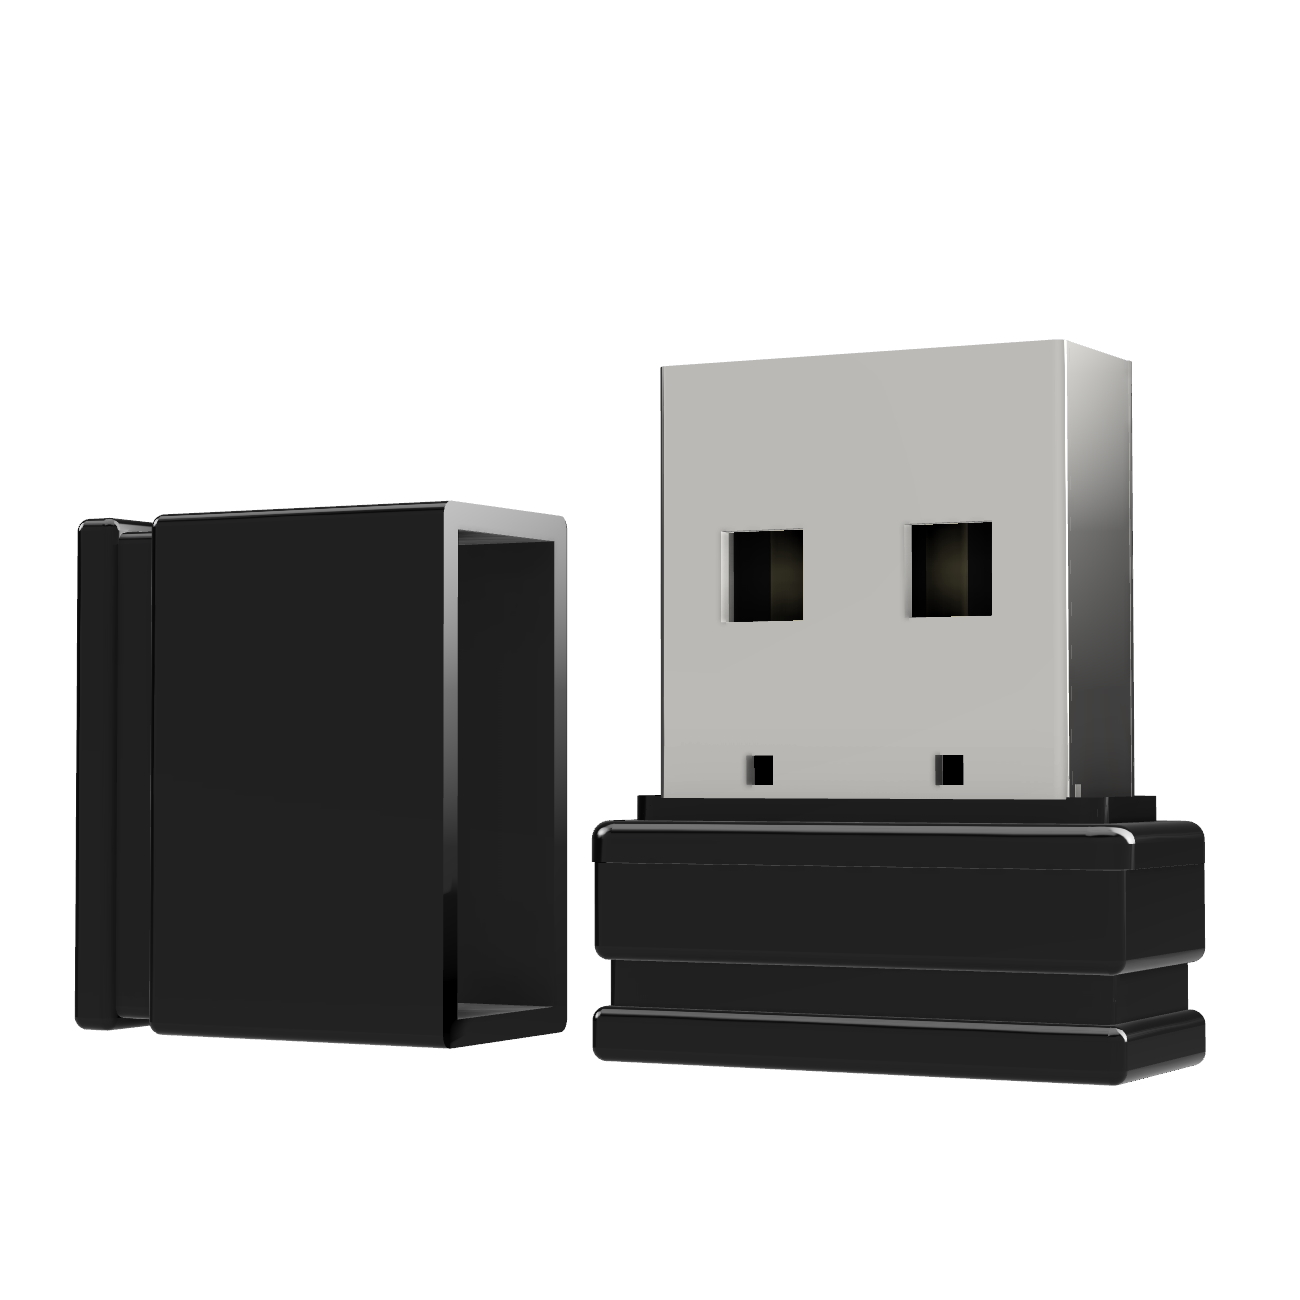 USB GERMANY (Schwarz, 2 Mini ®ULTRA USB-Stick GB) P1